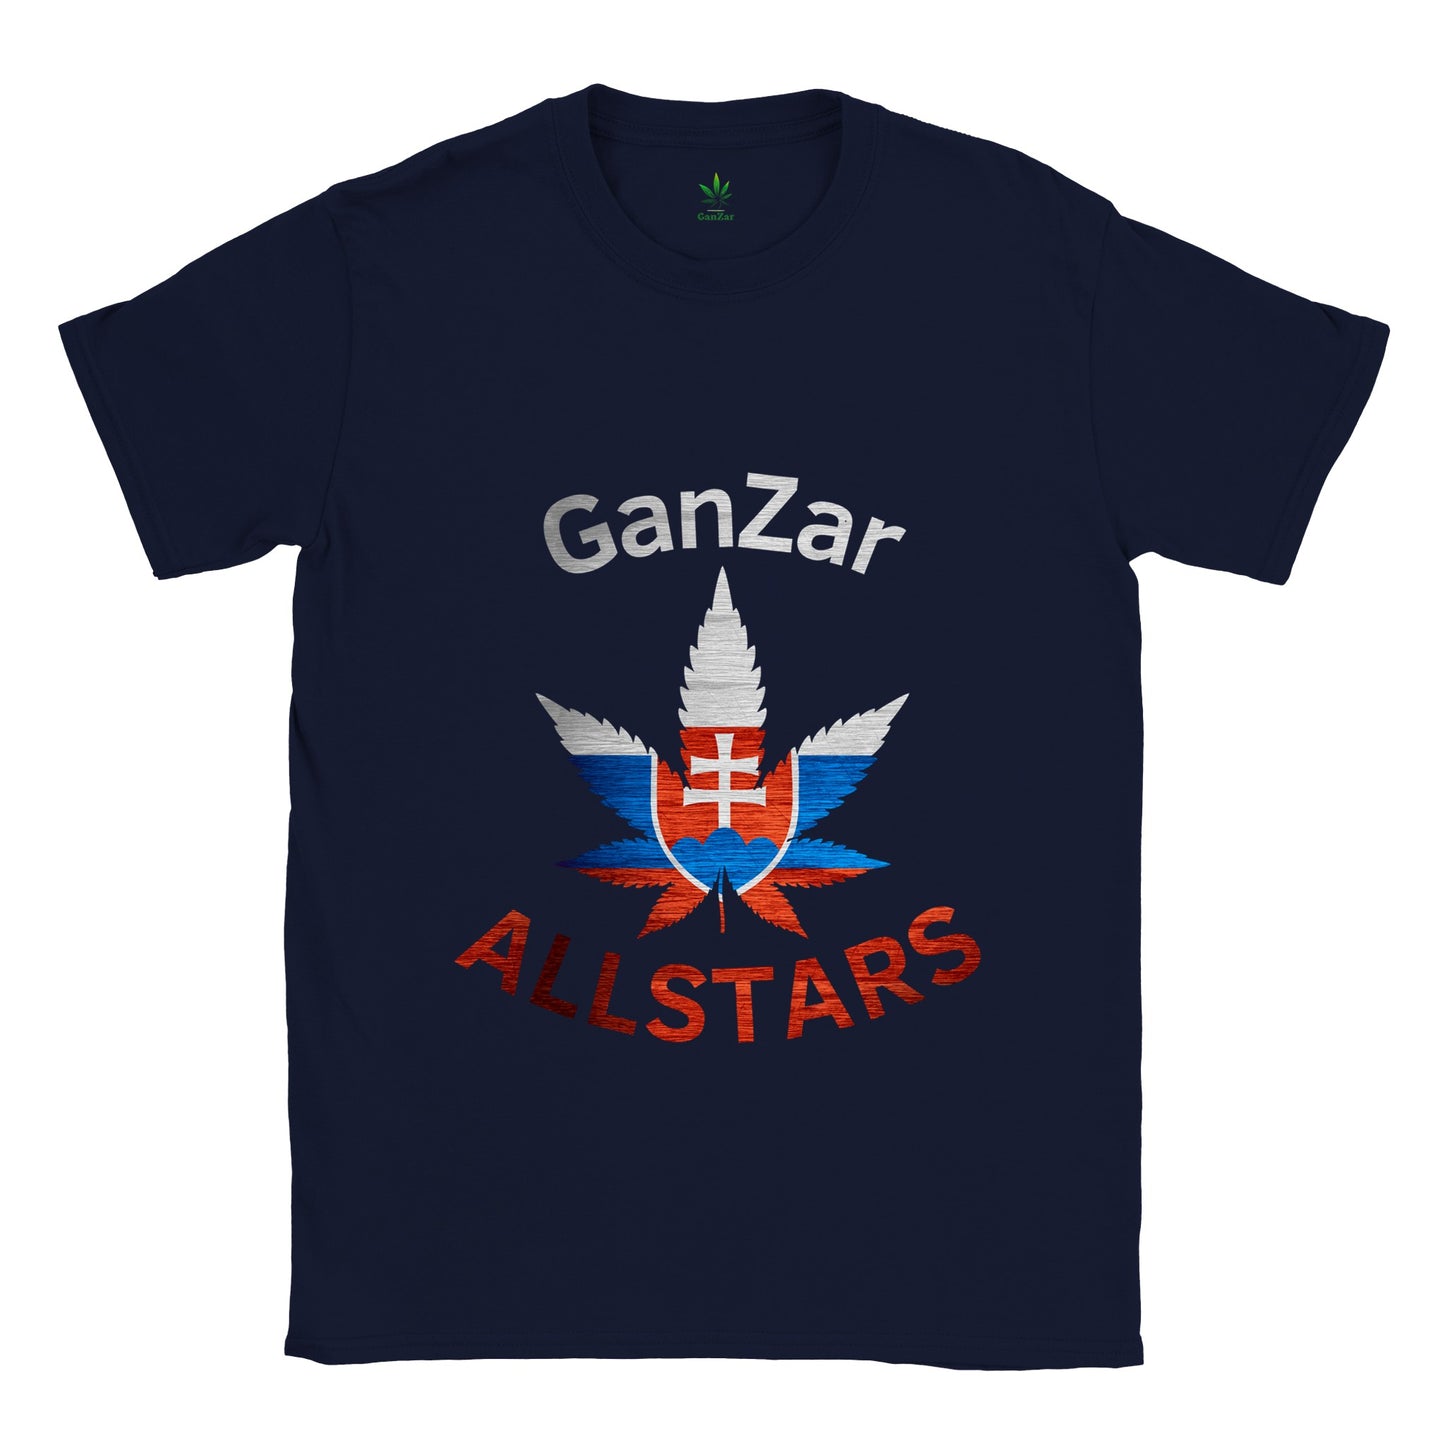 Slovakia GanZar Allstars Unisex T-Shirt